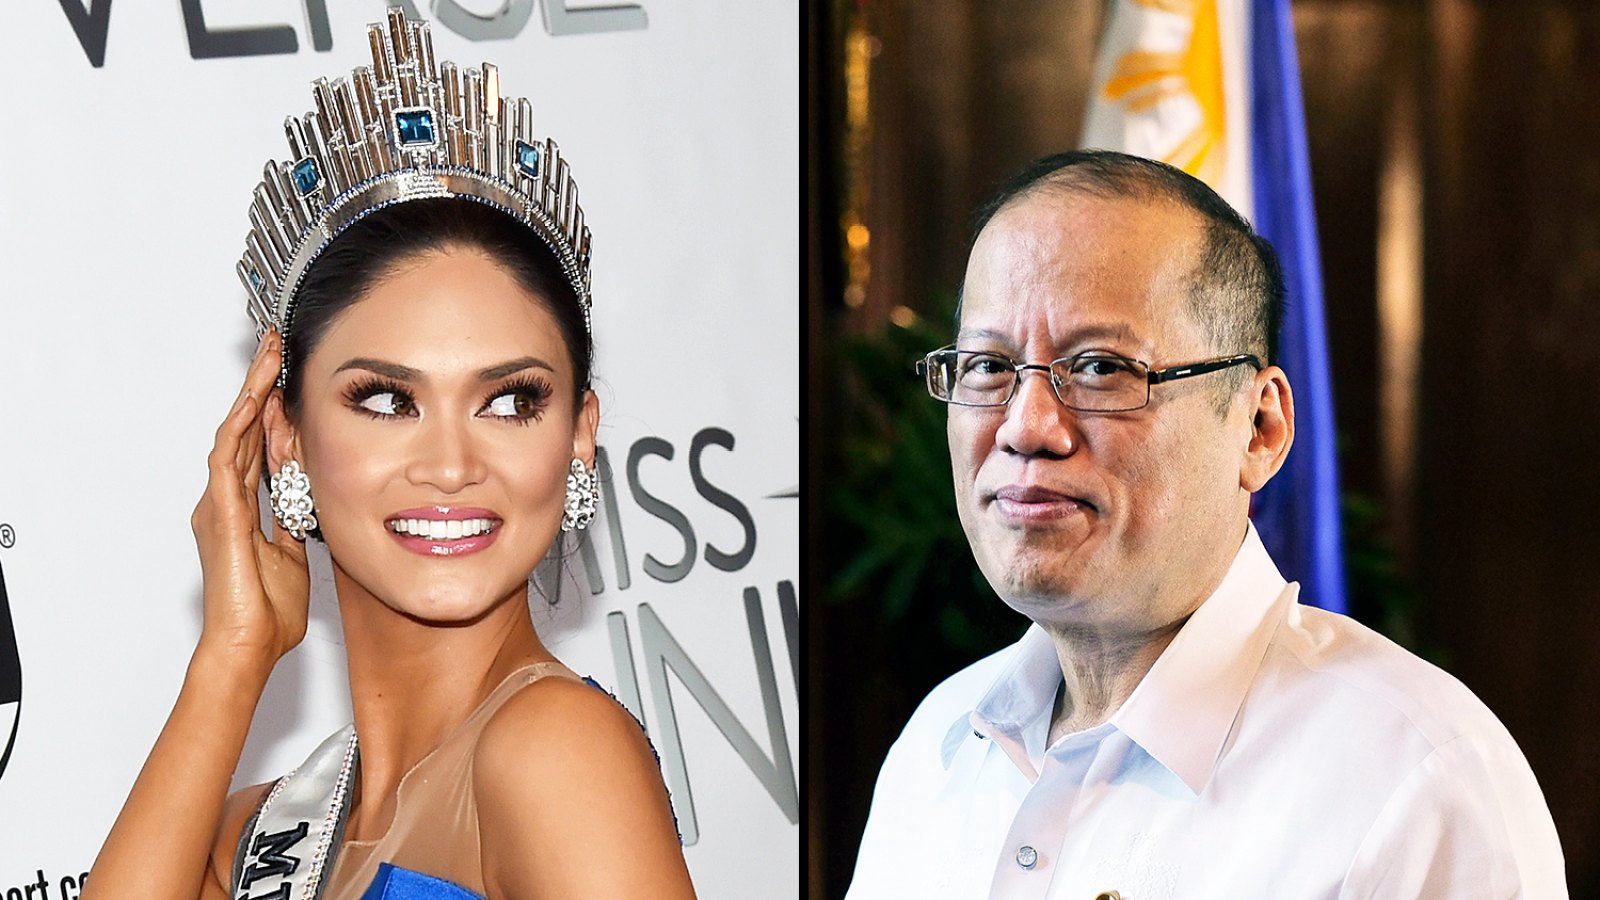 Miss Philippines 2015, Pia Alonzo Wurtzbach, and Philippine President Benigno Aquino